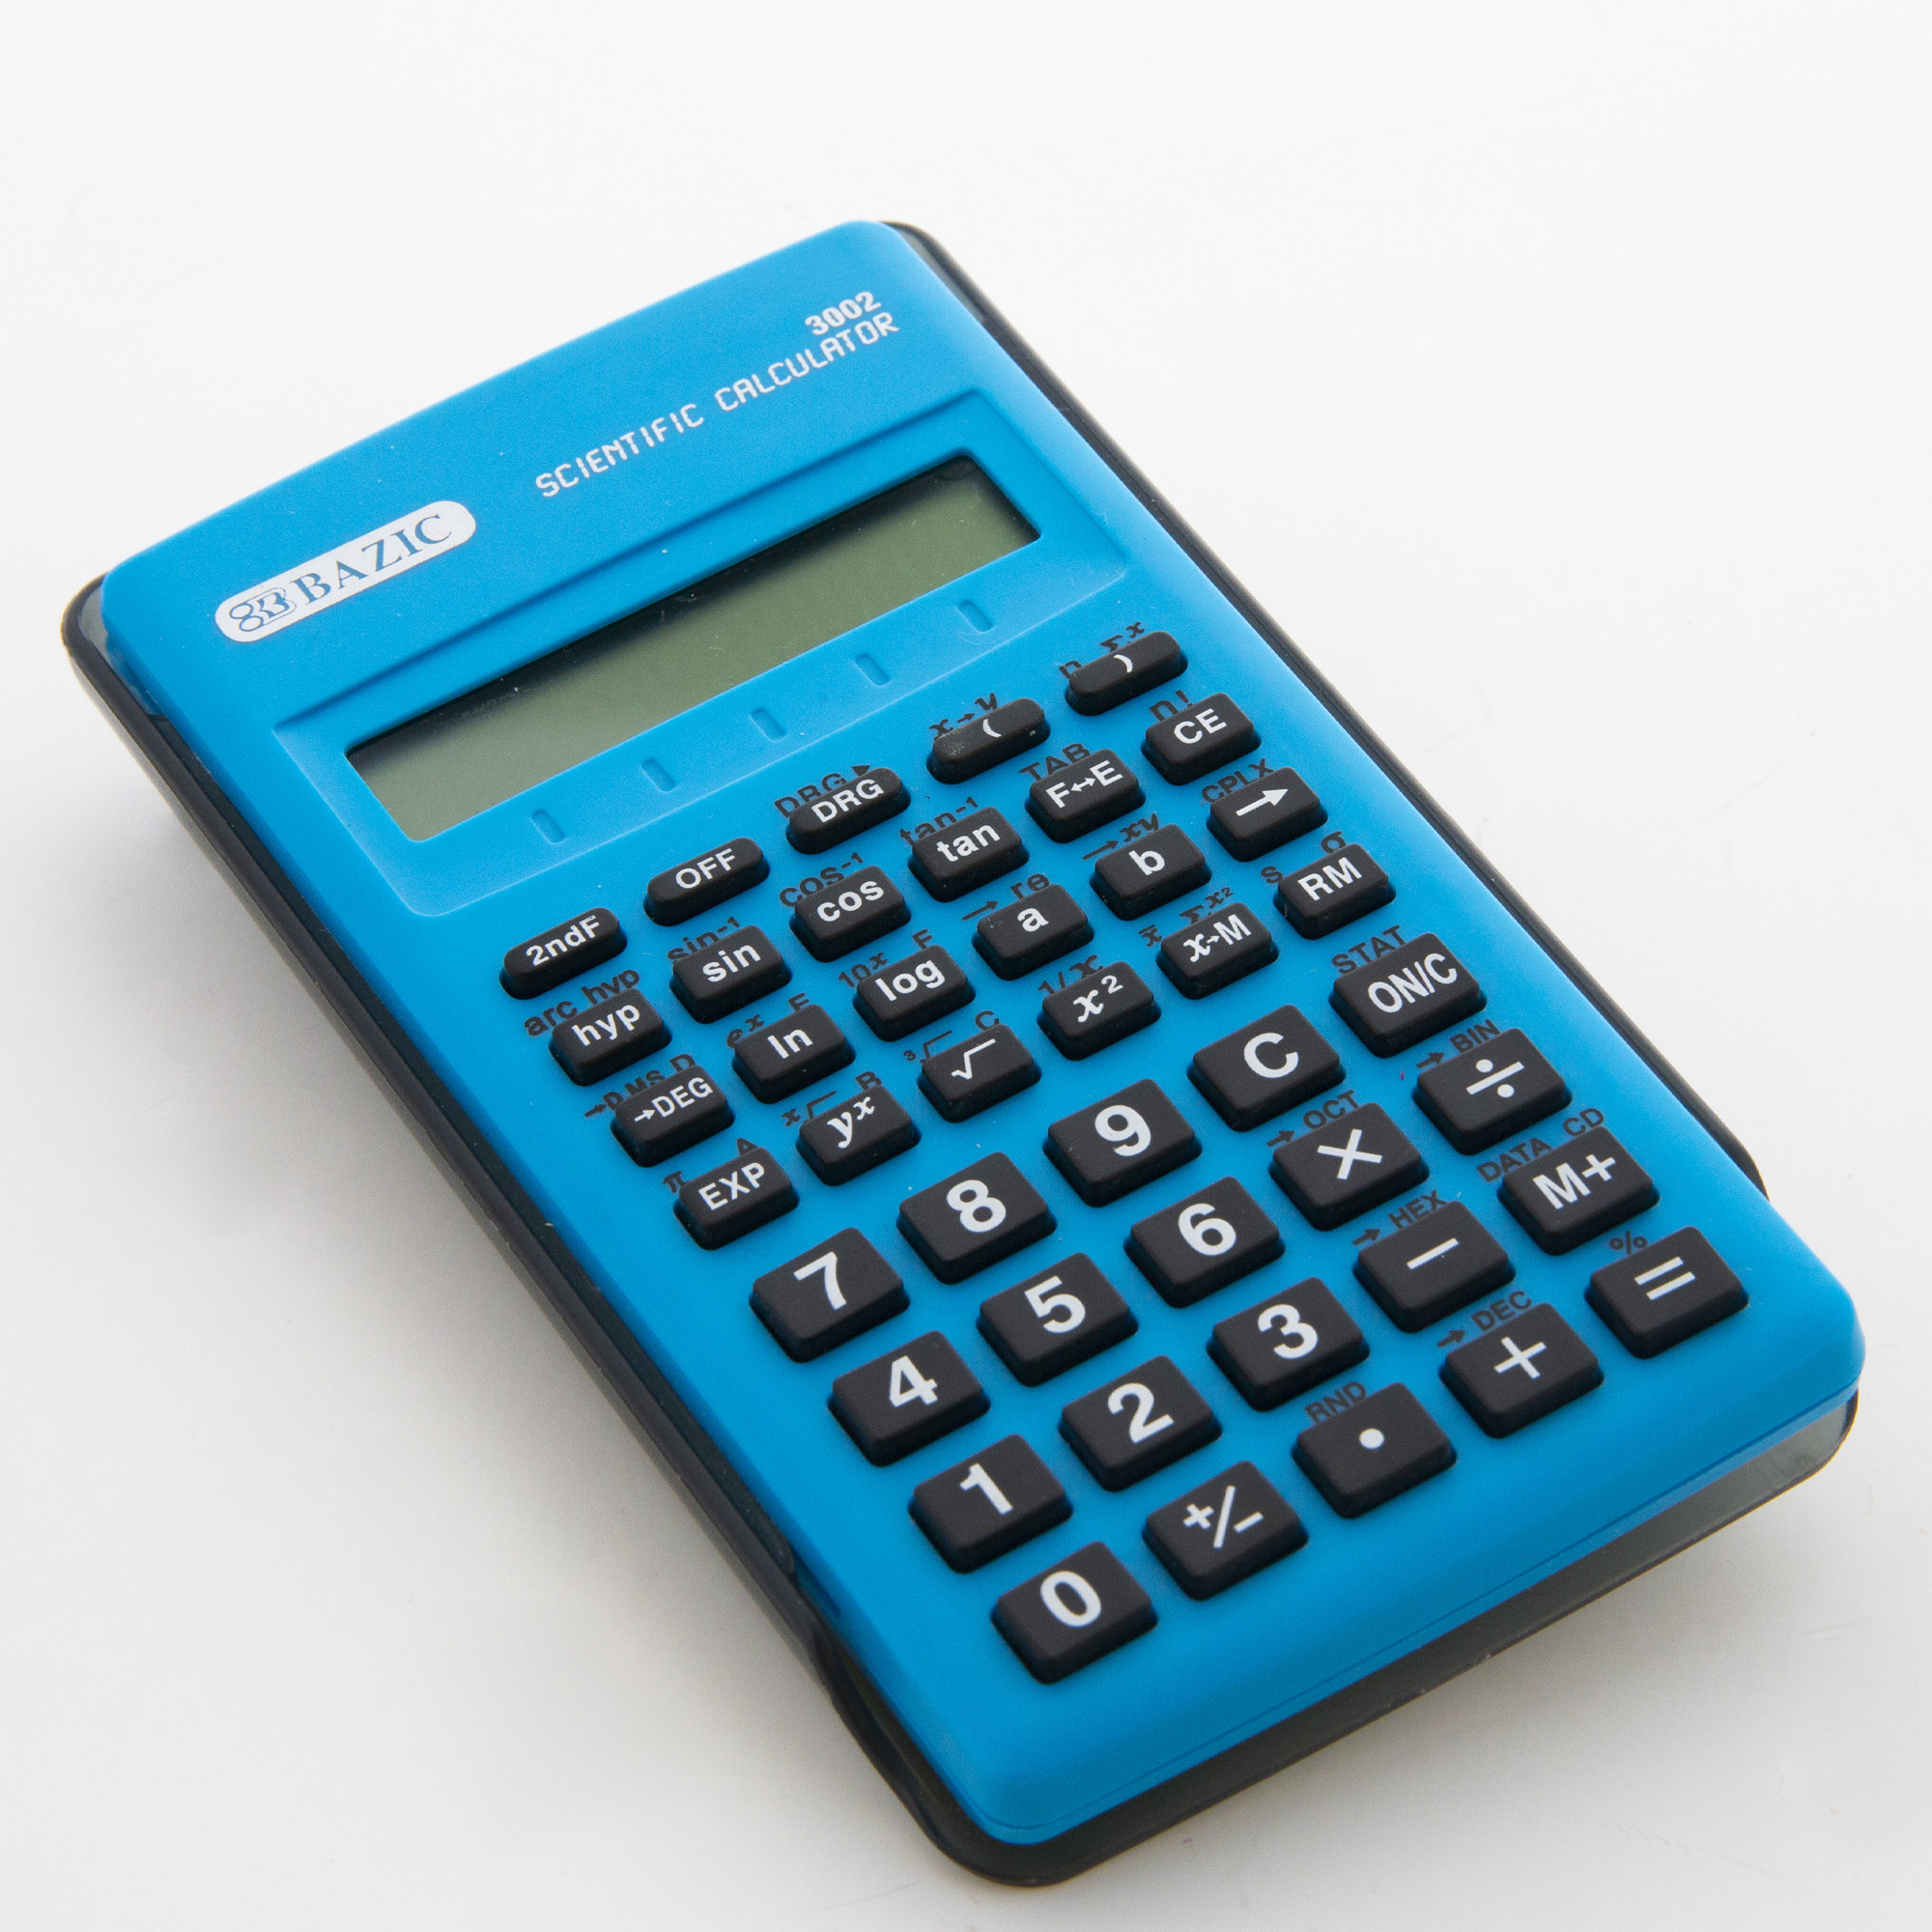 Scientific calculator. Калькулятор Canon f-715sg BK. F-715sg калькулятор. Калькулятор dl1710a. Калькулятор маленький.